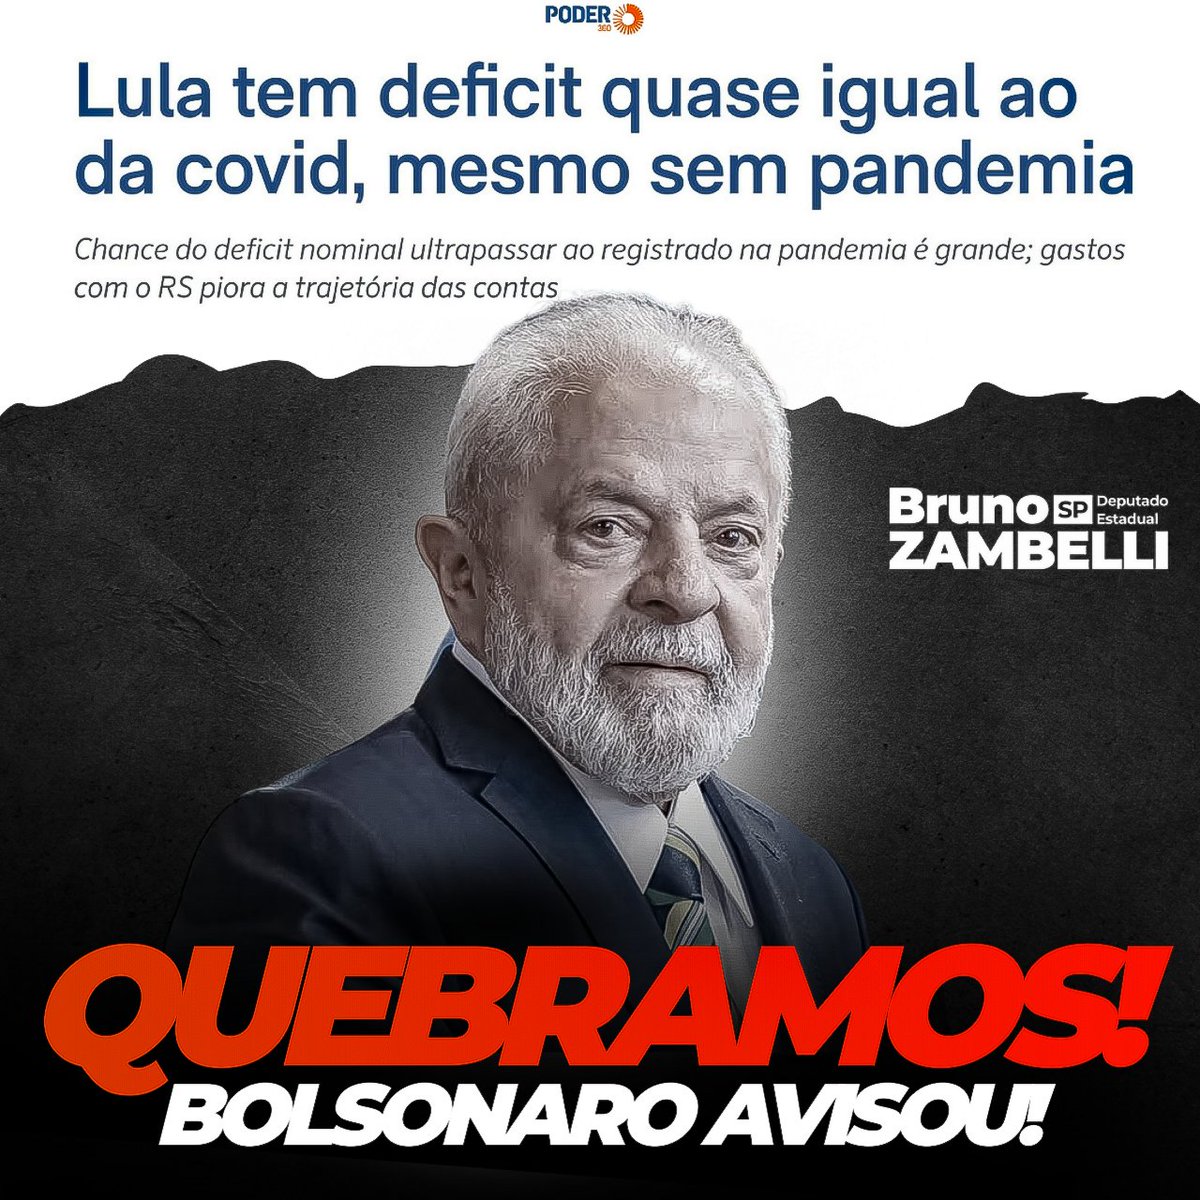 Lembram quando Bolsonaro disse: 'Se vocês botarem um 'pinguço' para dirigir o Brasil, um cara sem qualquer responsabilidade, que tem um rastro de corrupção, vocês acham que vai dar certo?'

Pois é, amigos! Vejam o resultado.